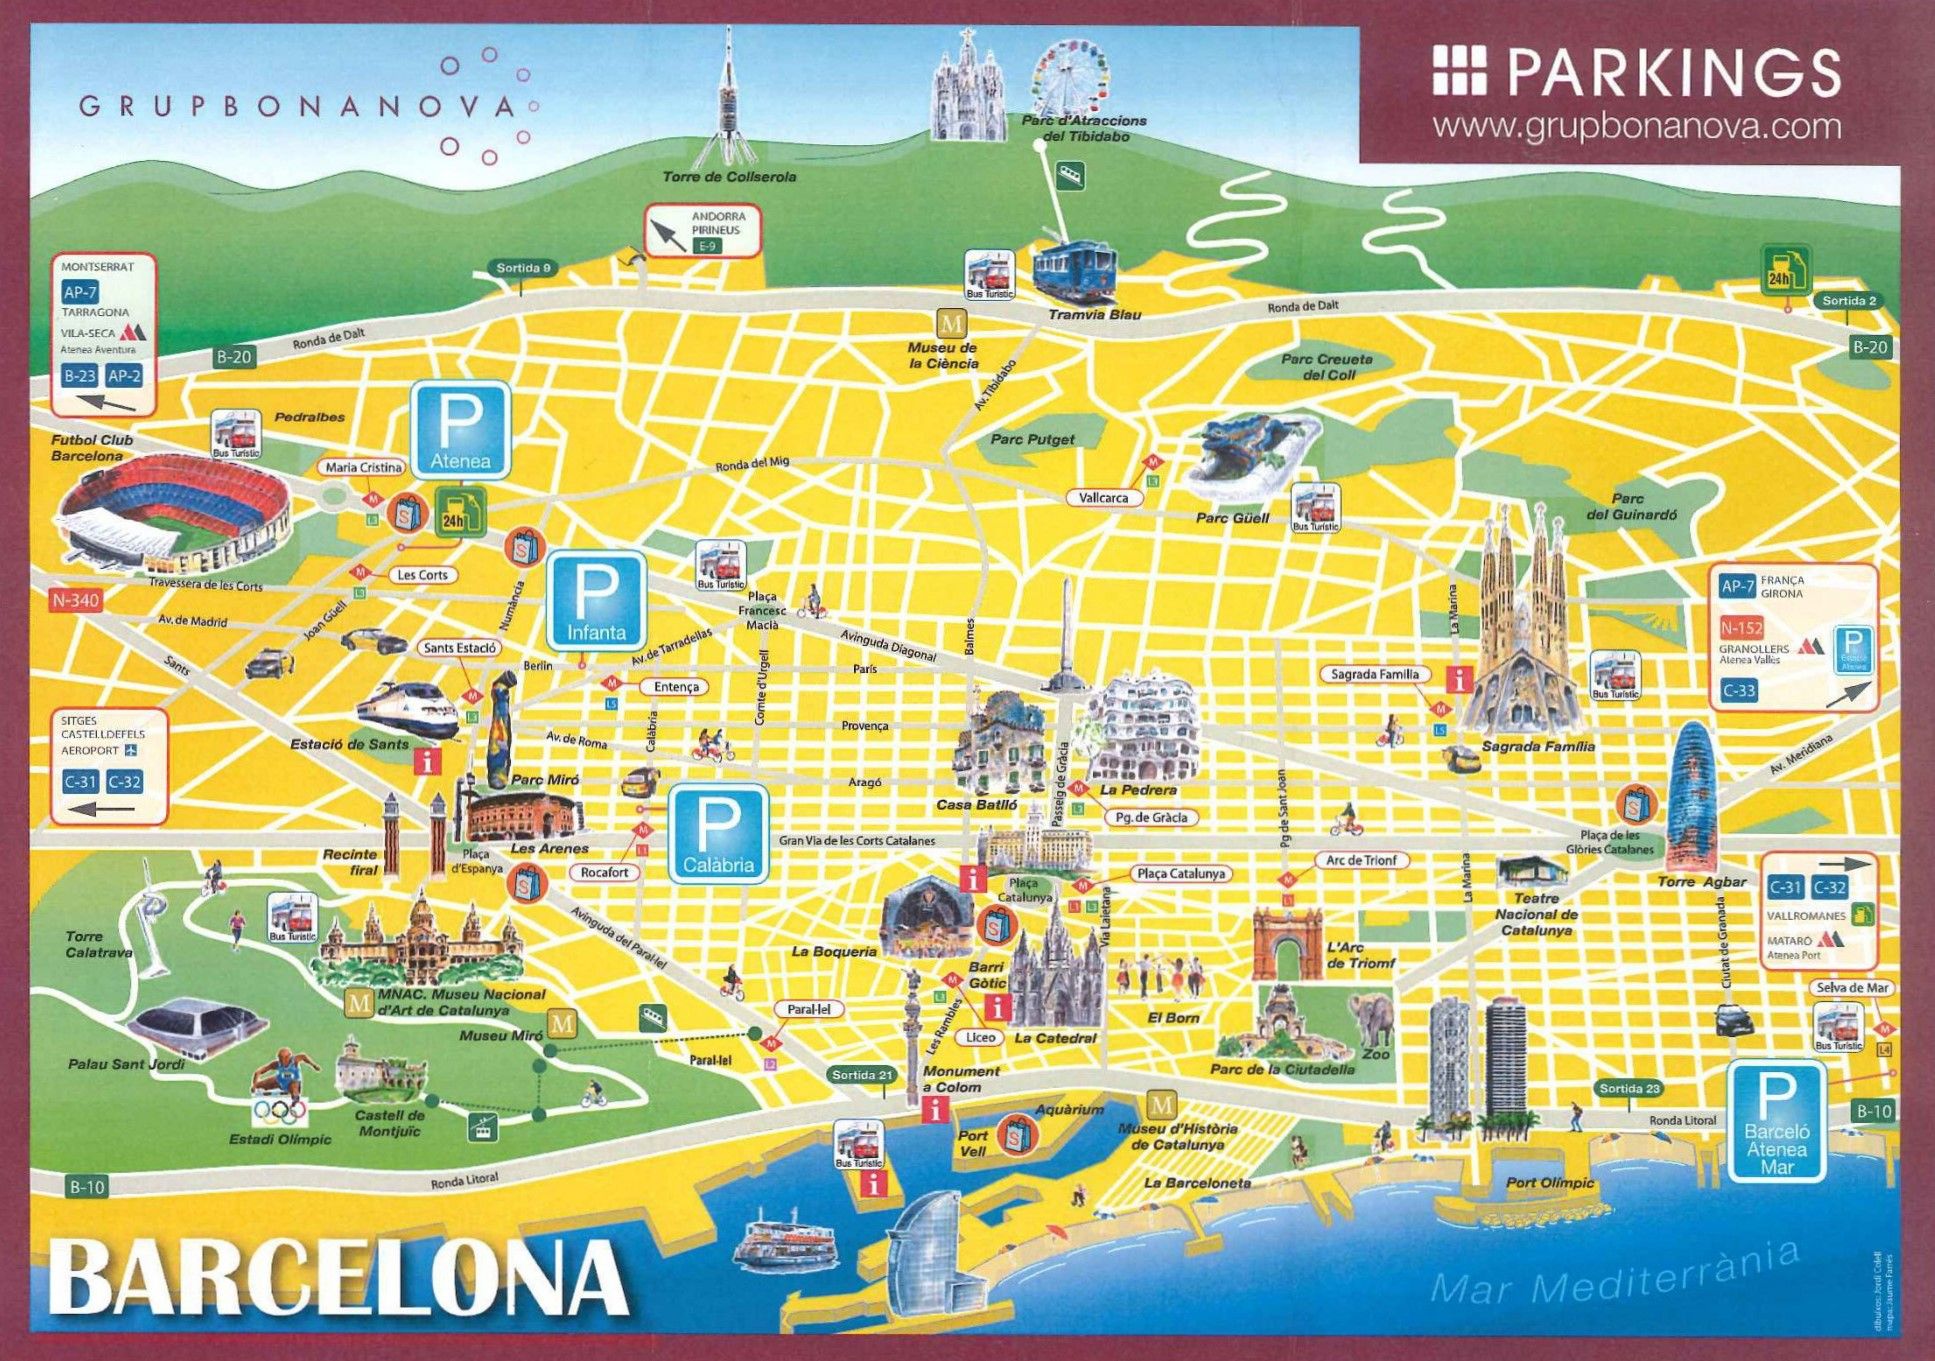 Город барселона в испании: достопримечательности с фото и описанием, карта